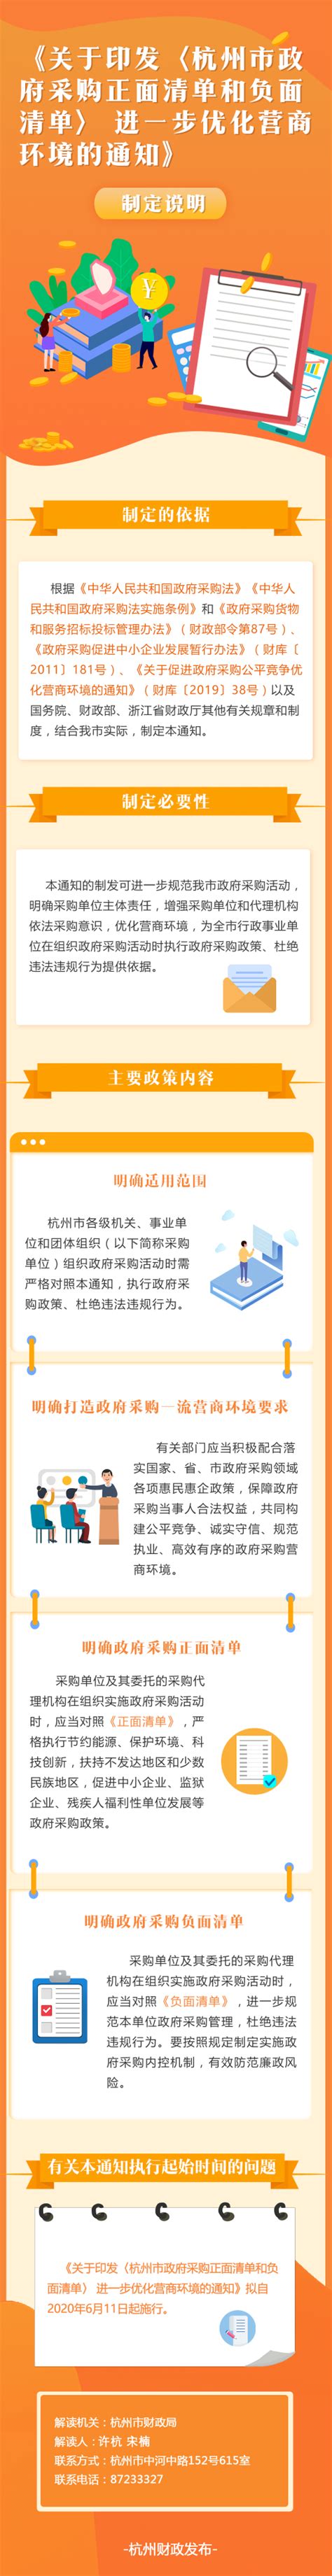 《关于印发〈杭州市政府采购正面清单和负面清单〉 进一步优化营商环境的通知》图文政策解读